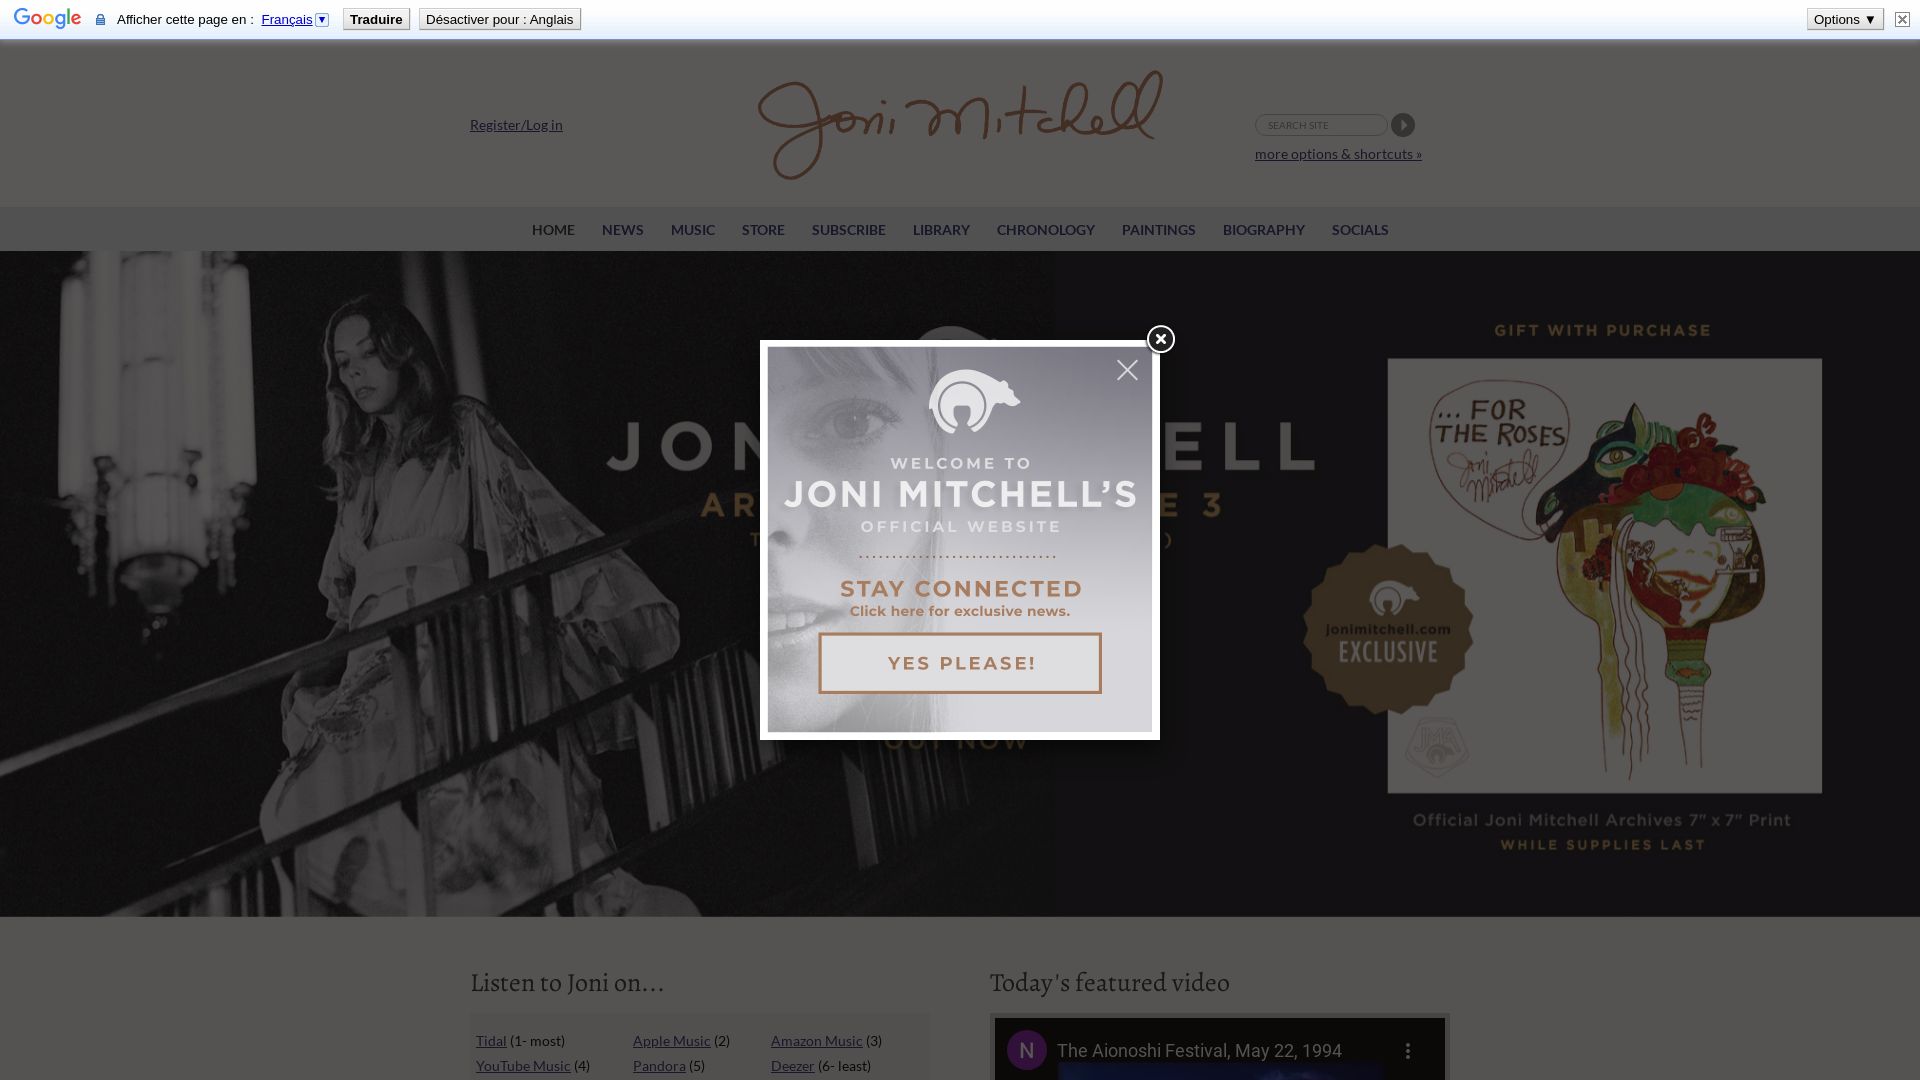 État du site web jonimitchell.com est   EN LIGNE